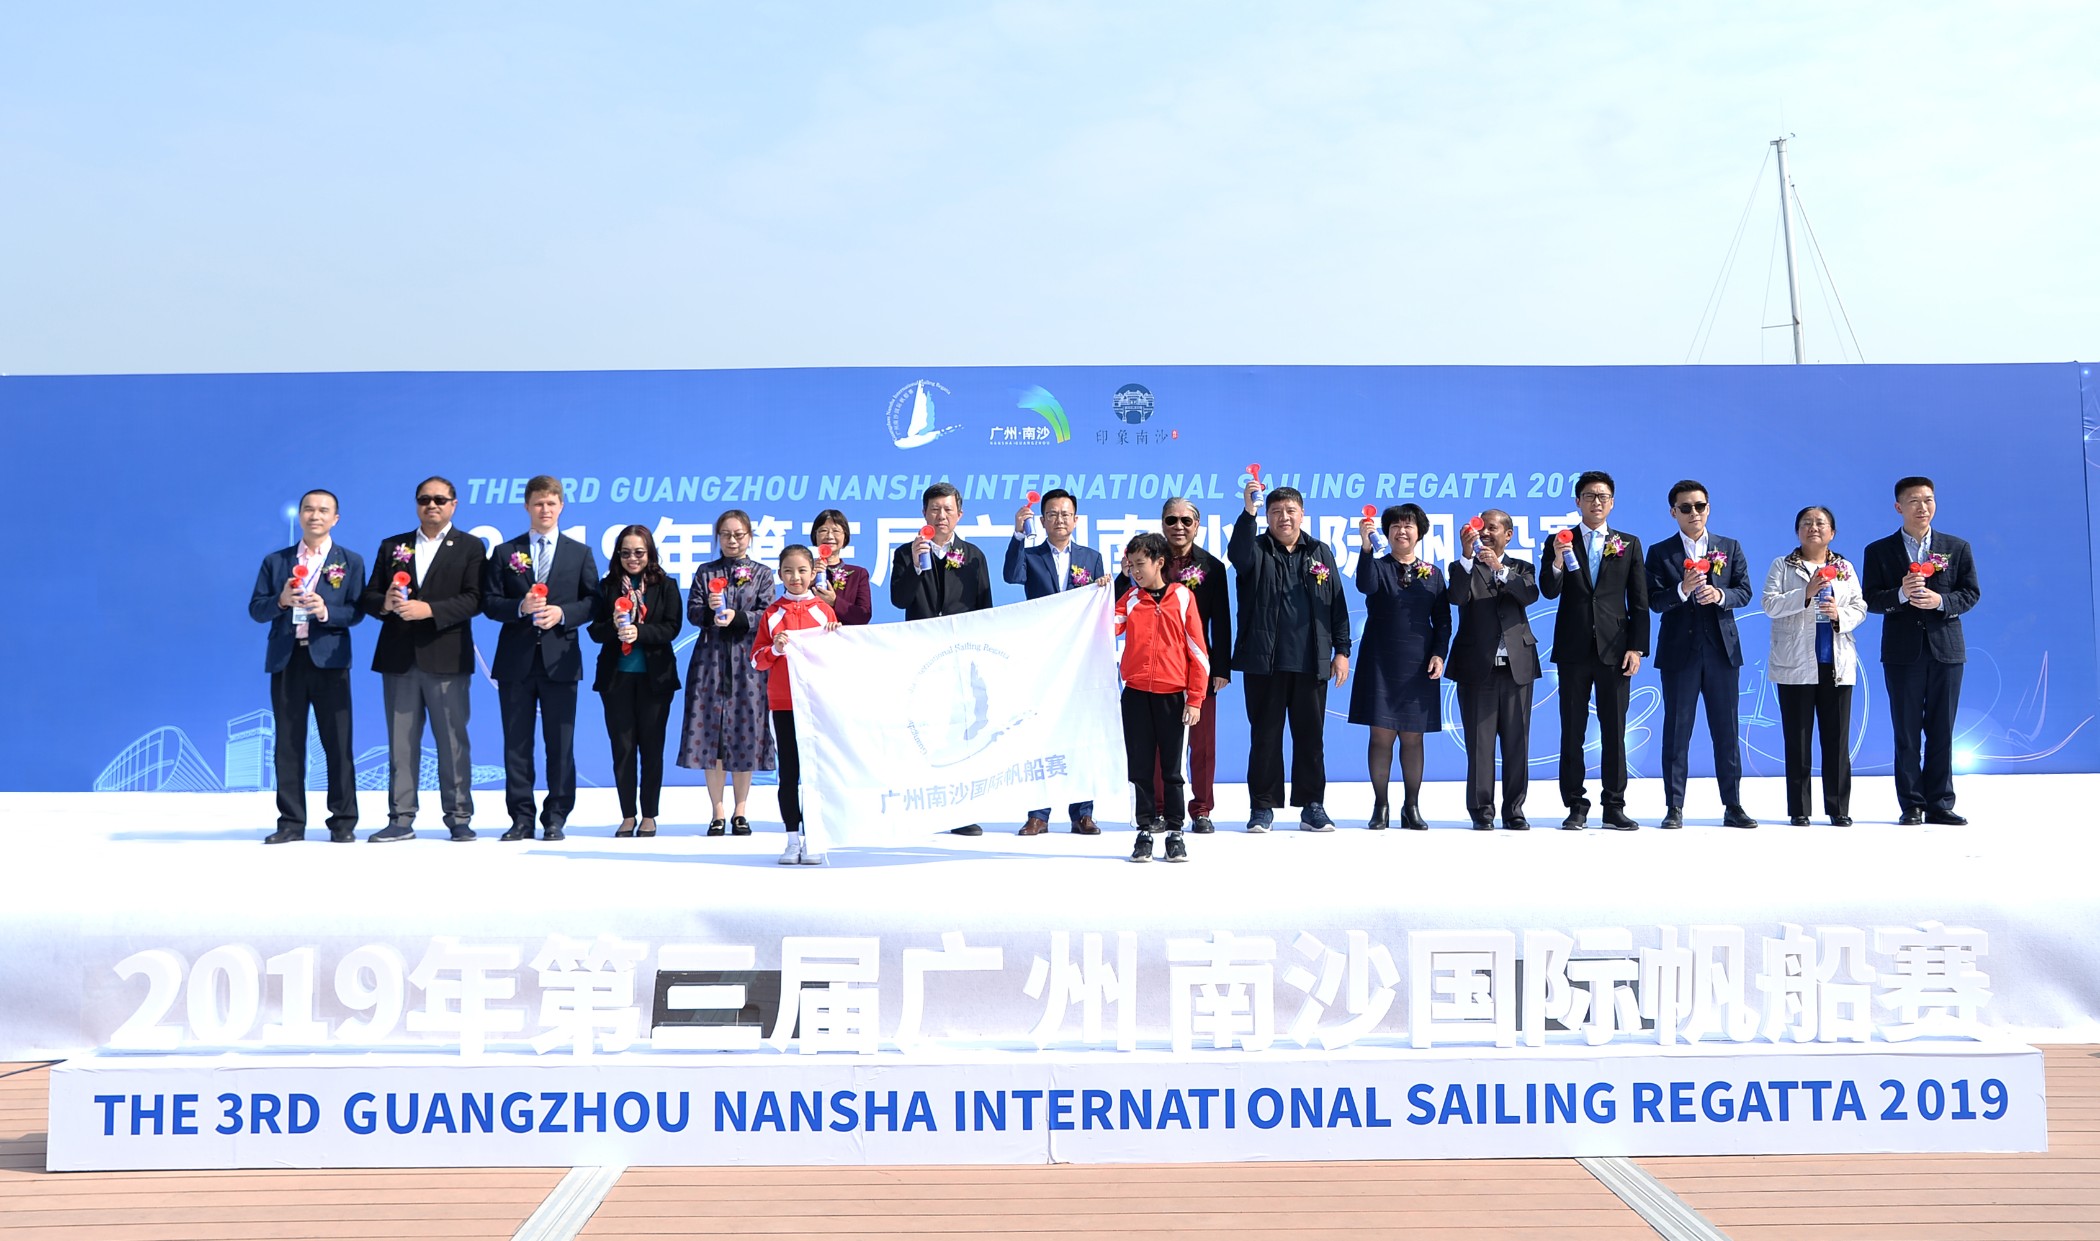 2019 3rd Guangzhou Nansha International Sailing Regatta